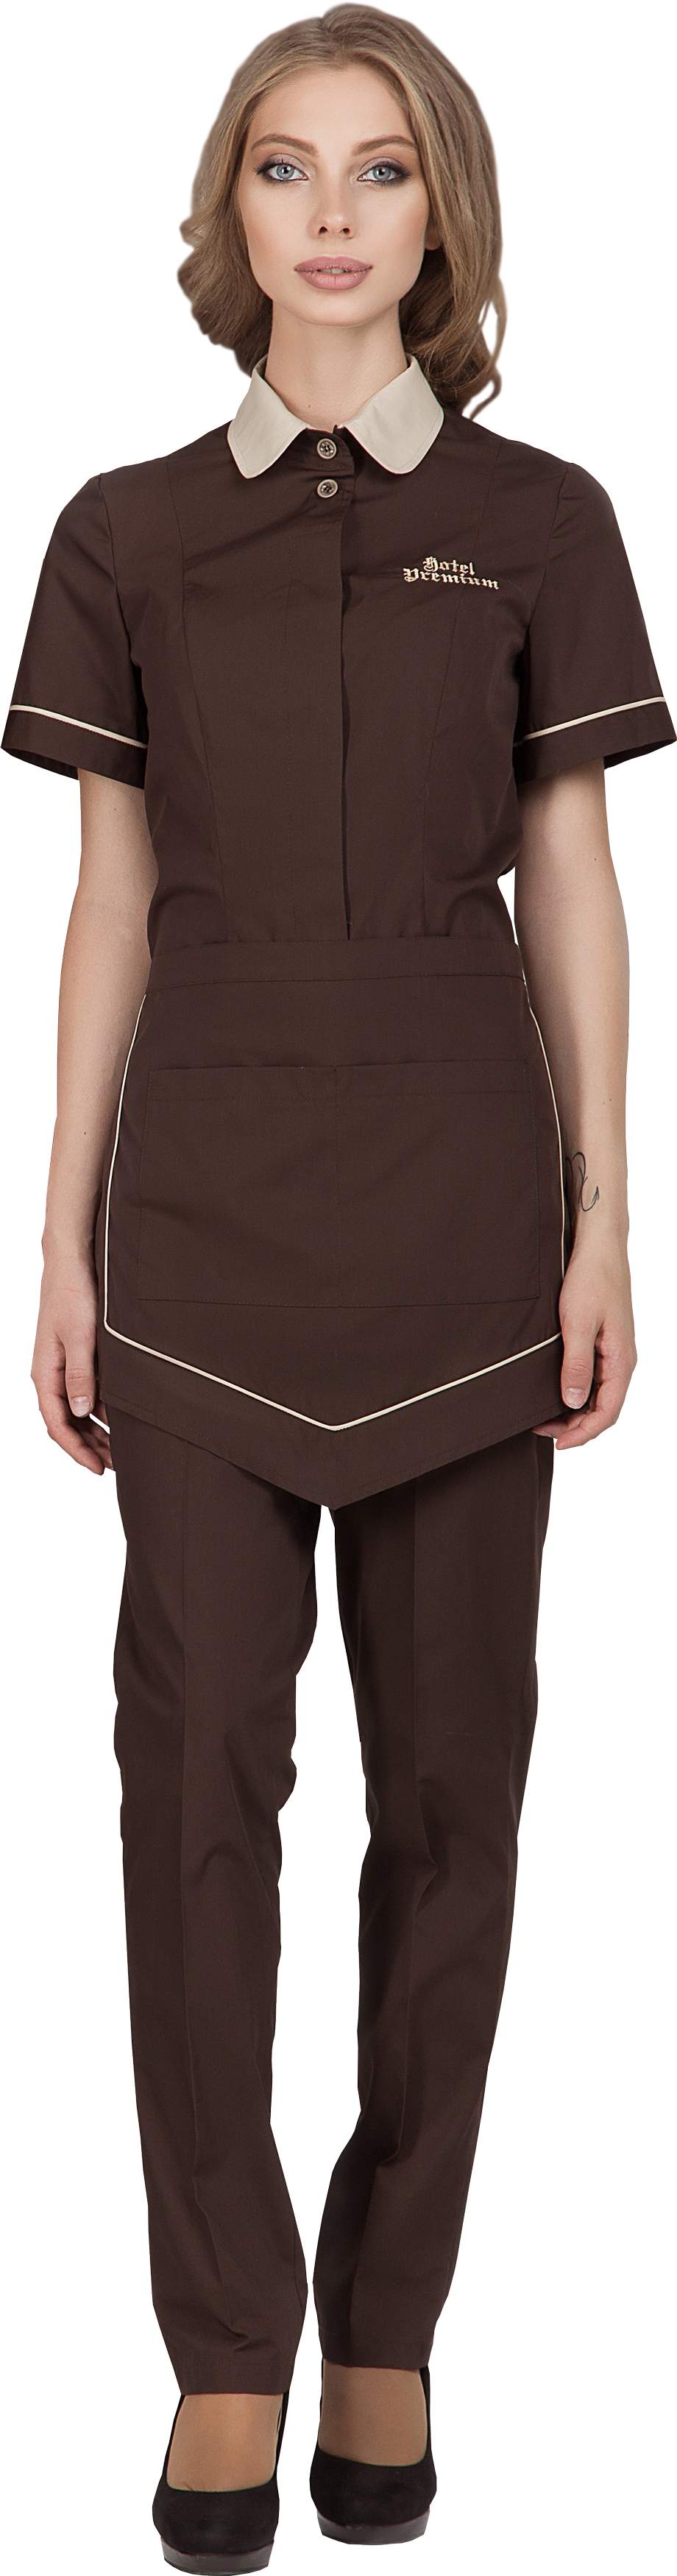 Комплект для горничной LIMA - блузка / фартук / брюки.